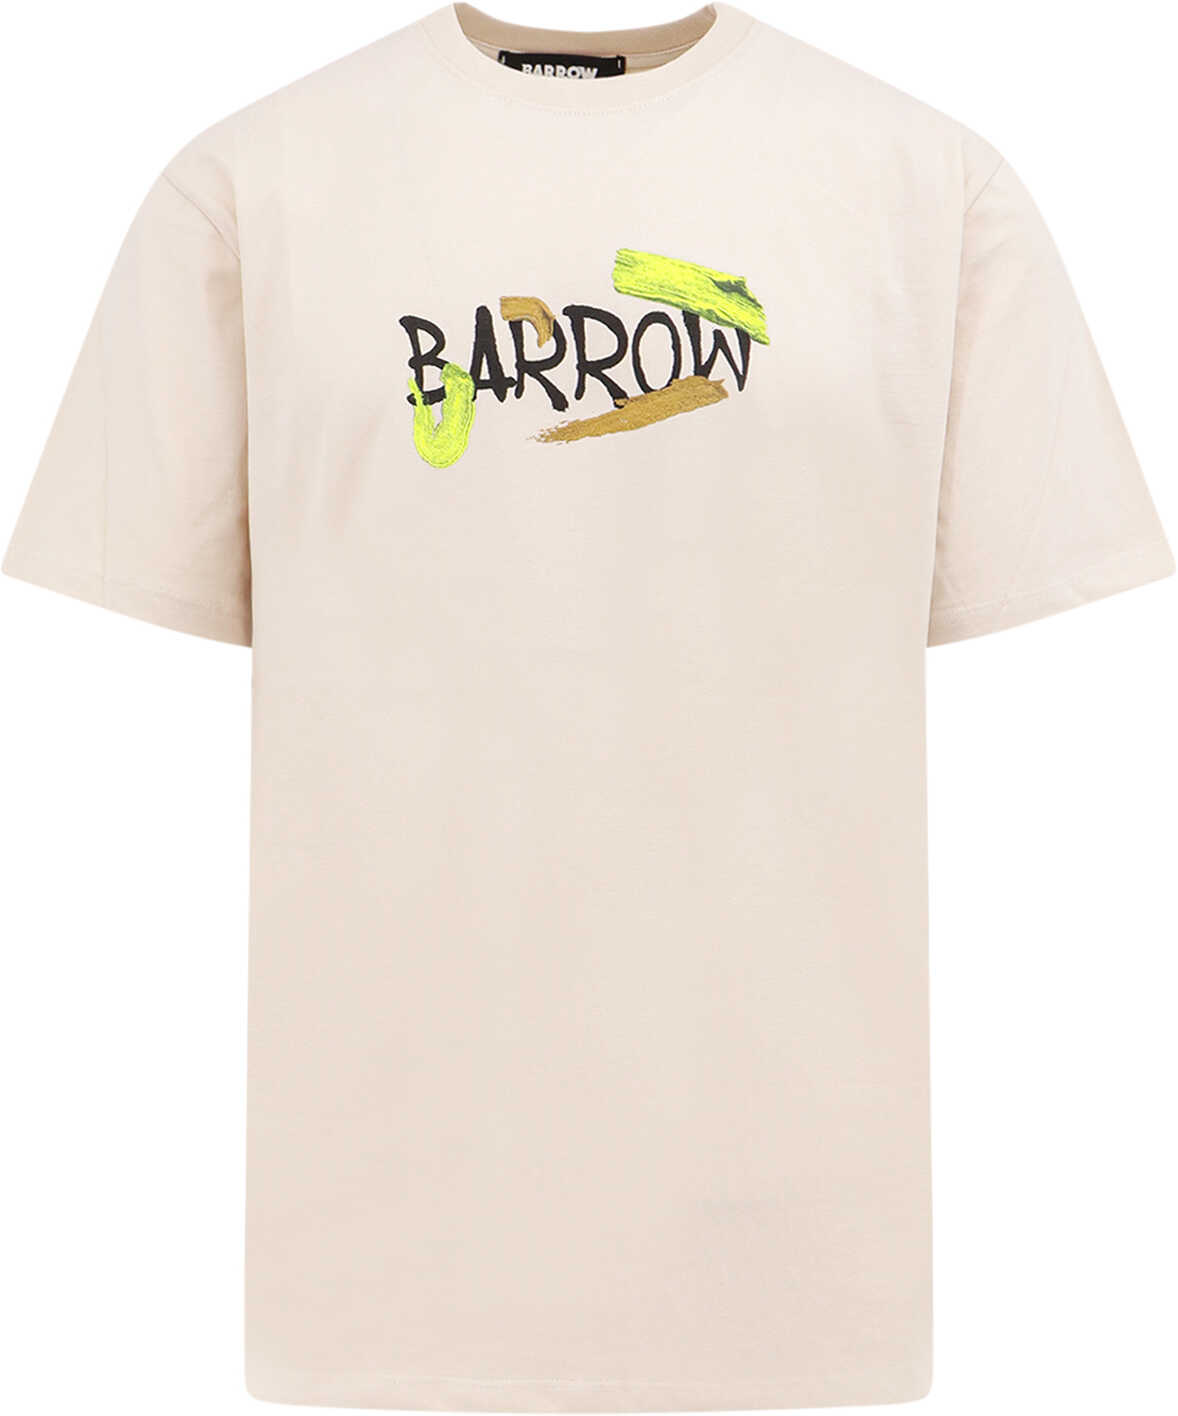 BARROW T-Shirt Beige